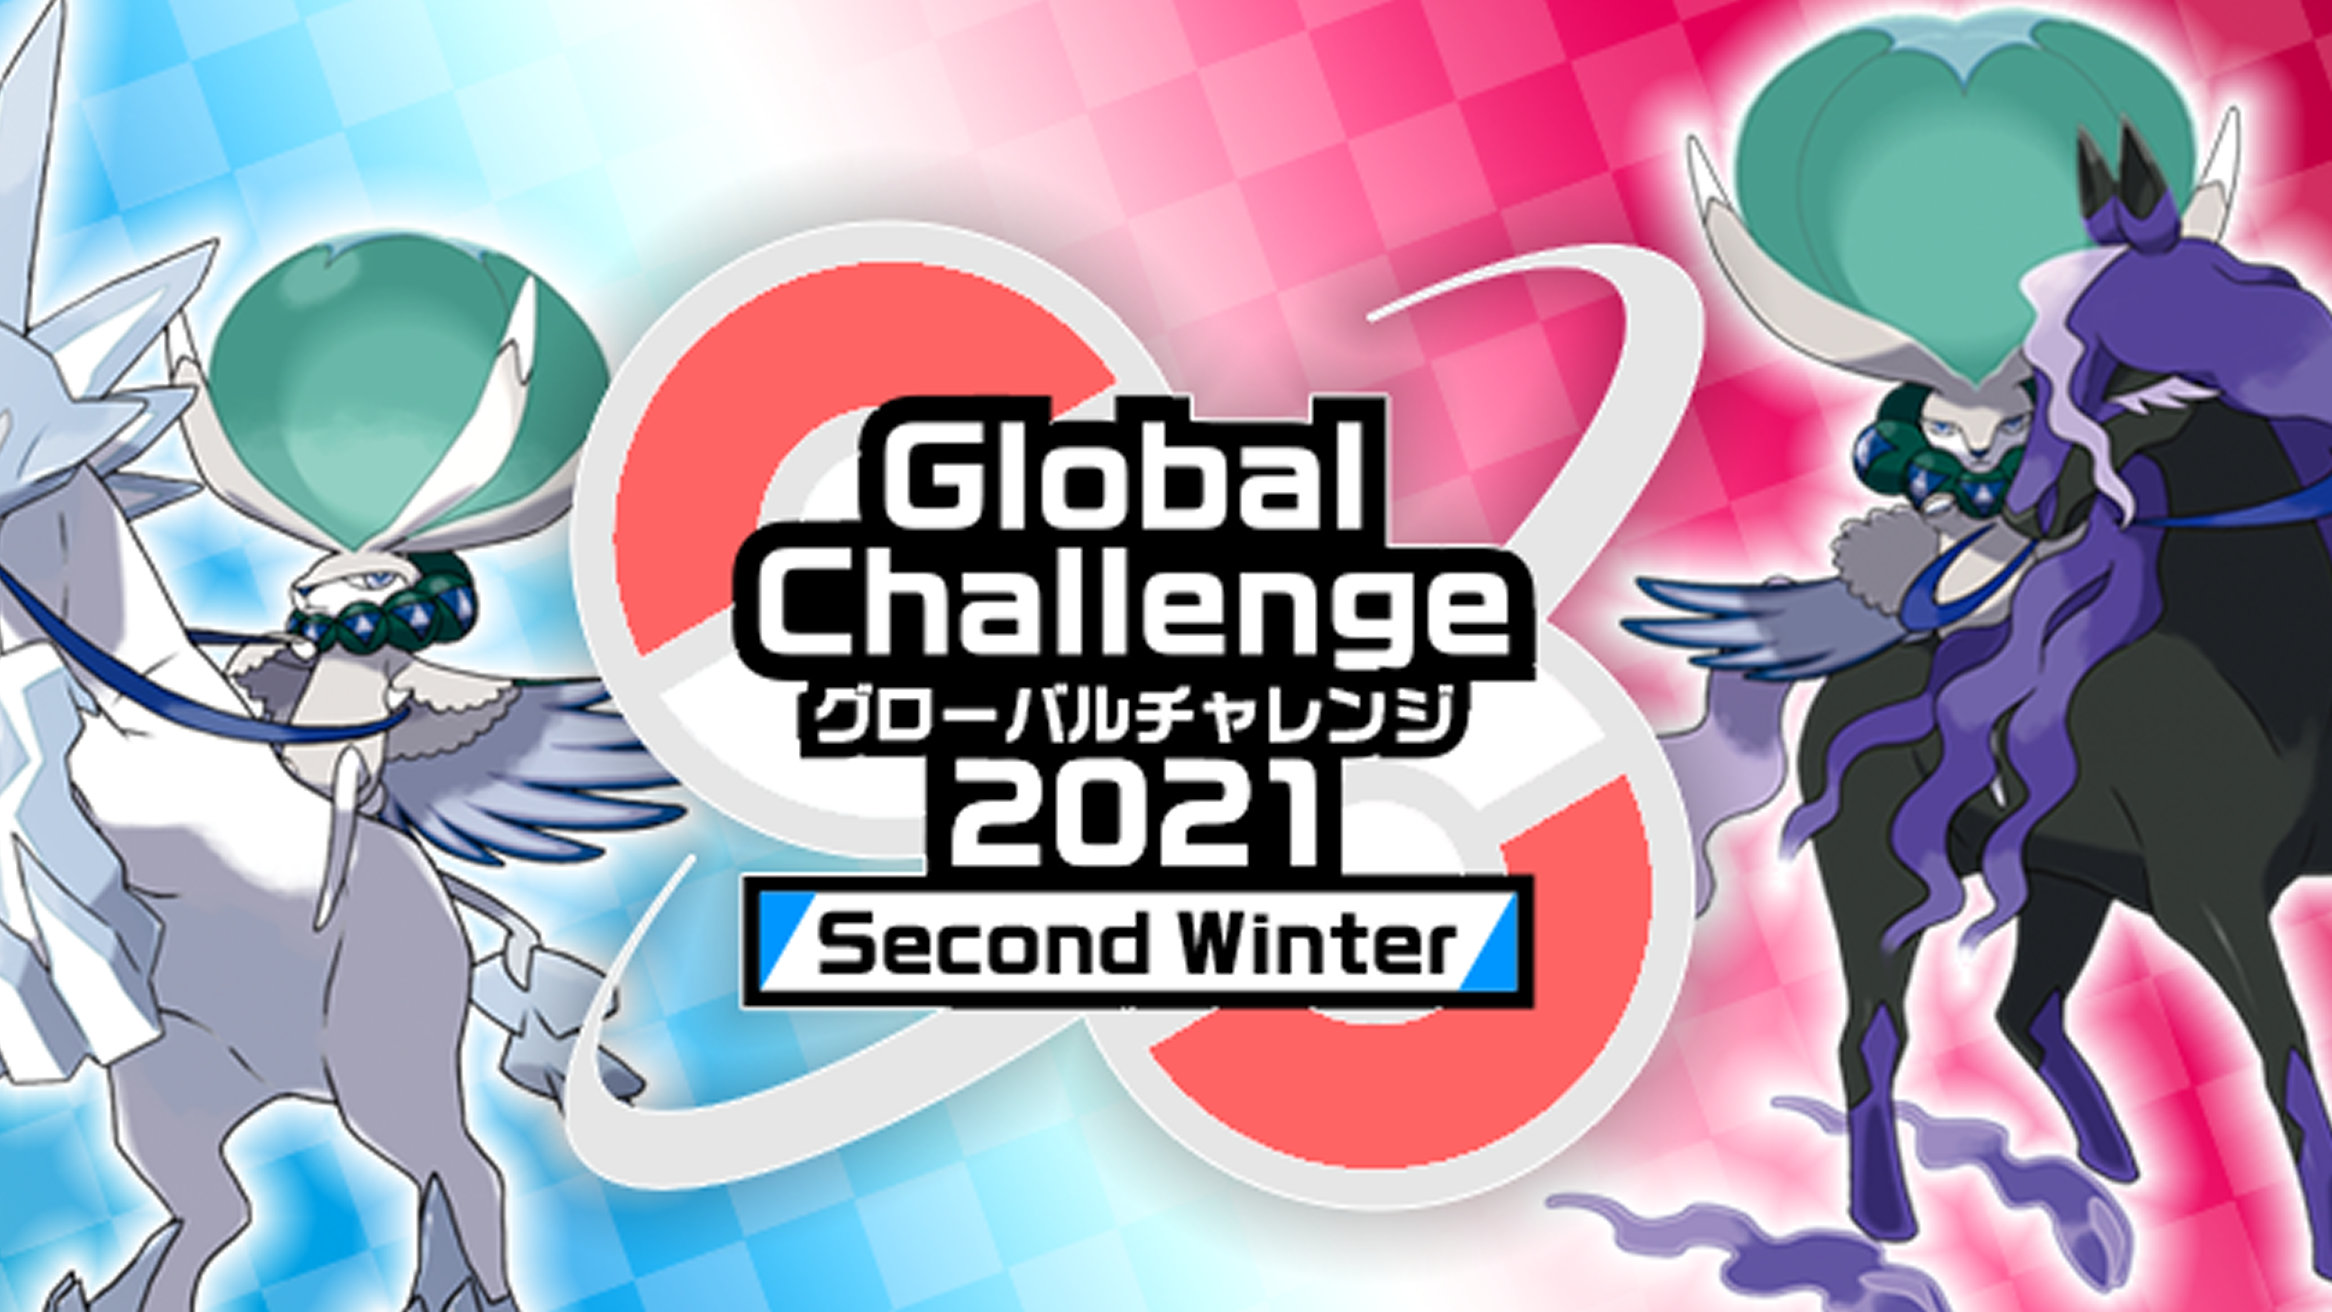 ポケモン剣盾 Global Challenge 21 Second Winter の公式大会が開催